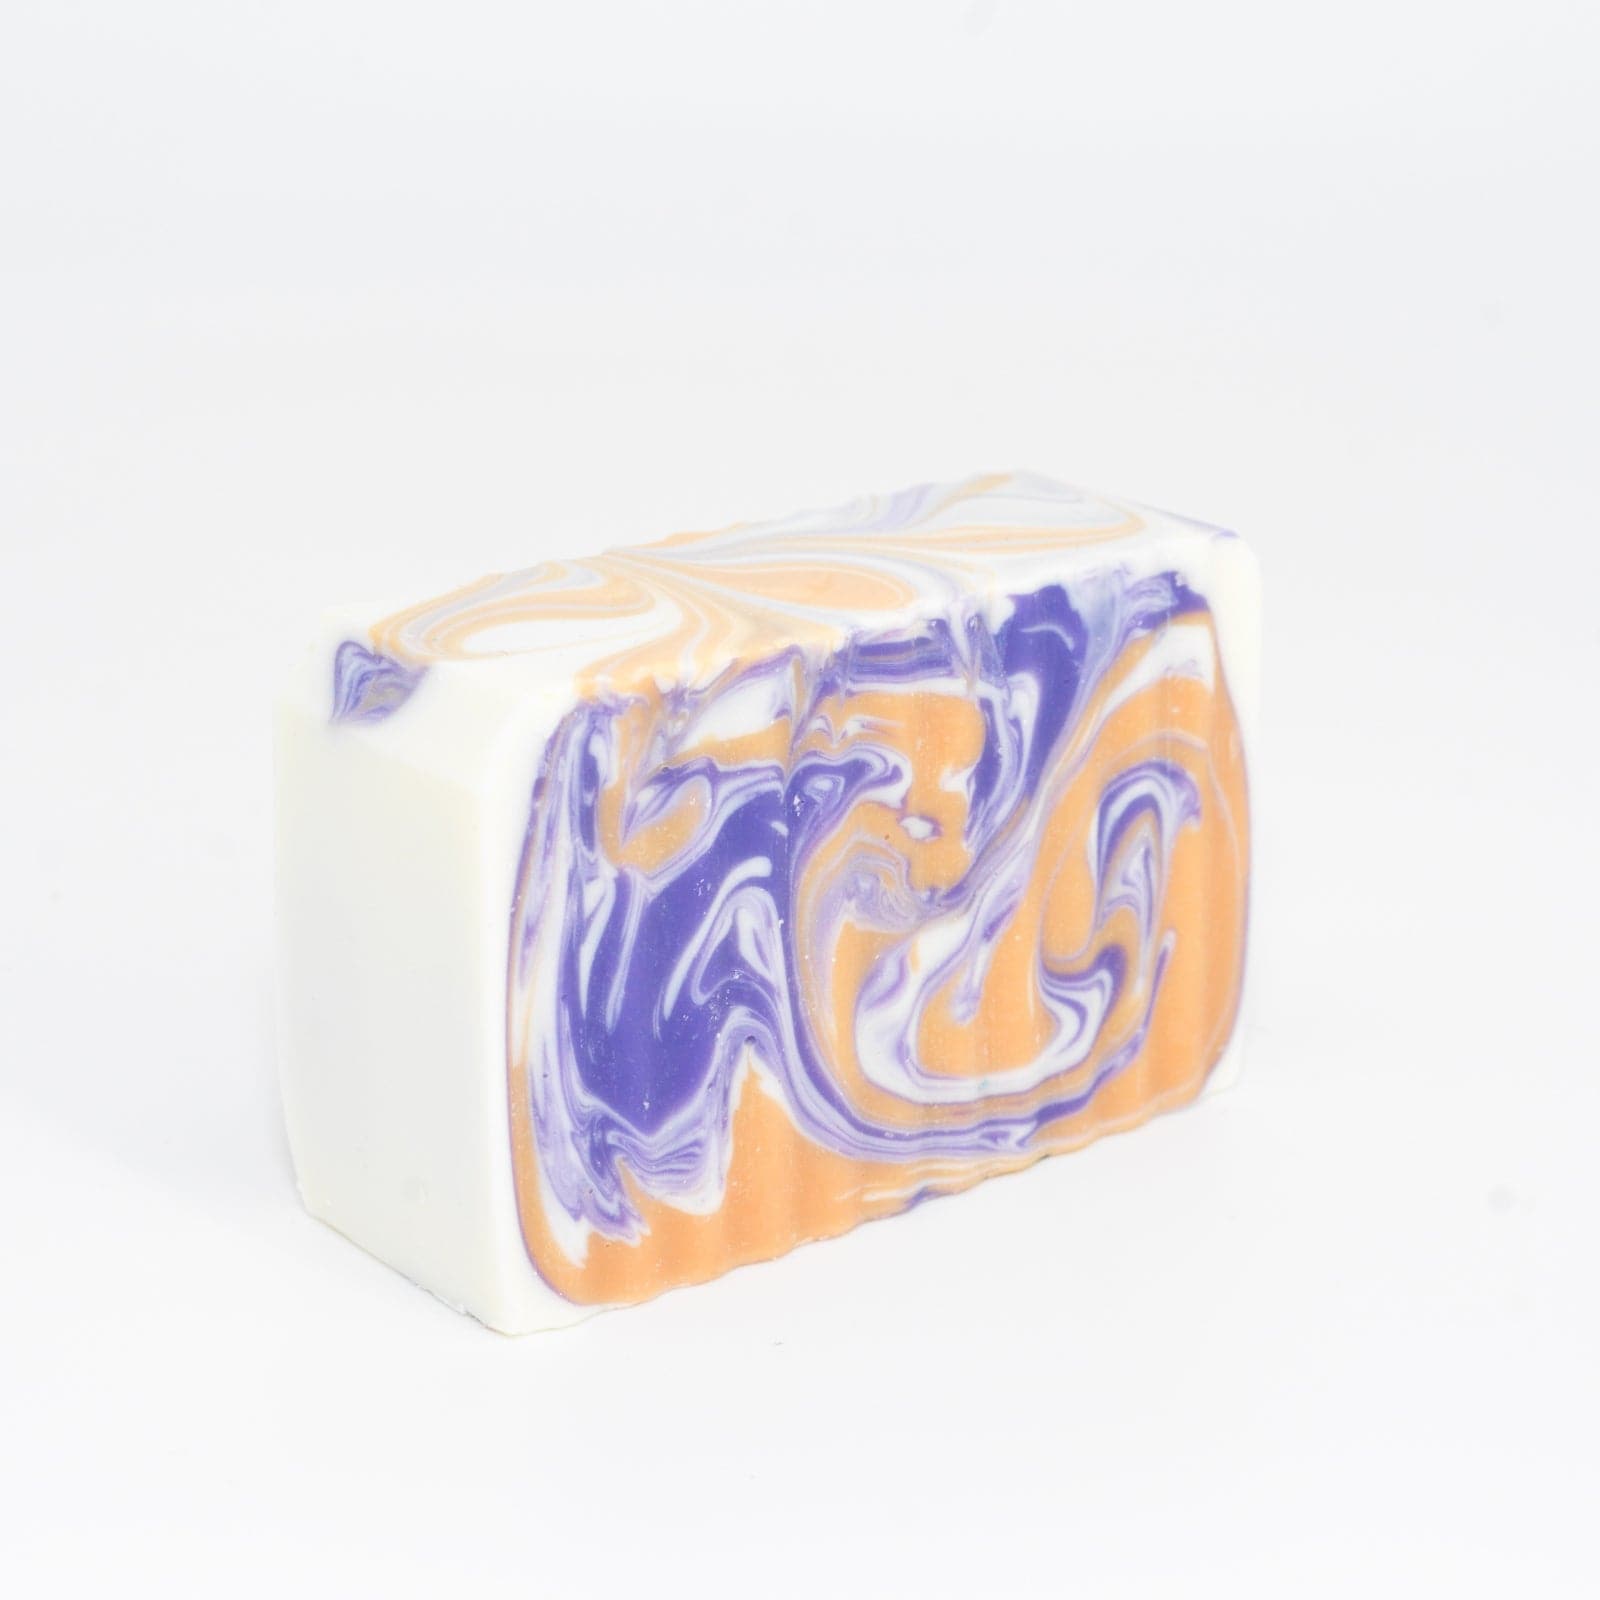 Buff City Soap's multi-colored love potion soap bar